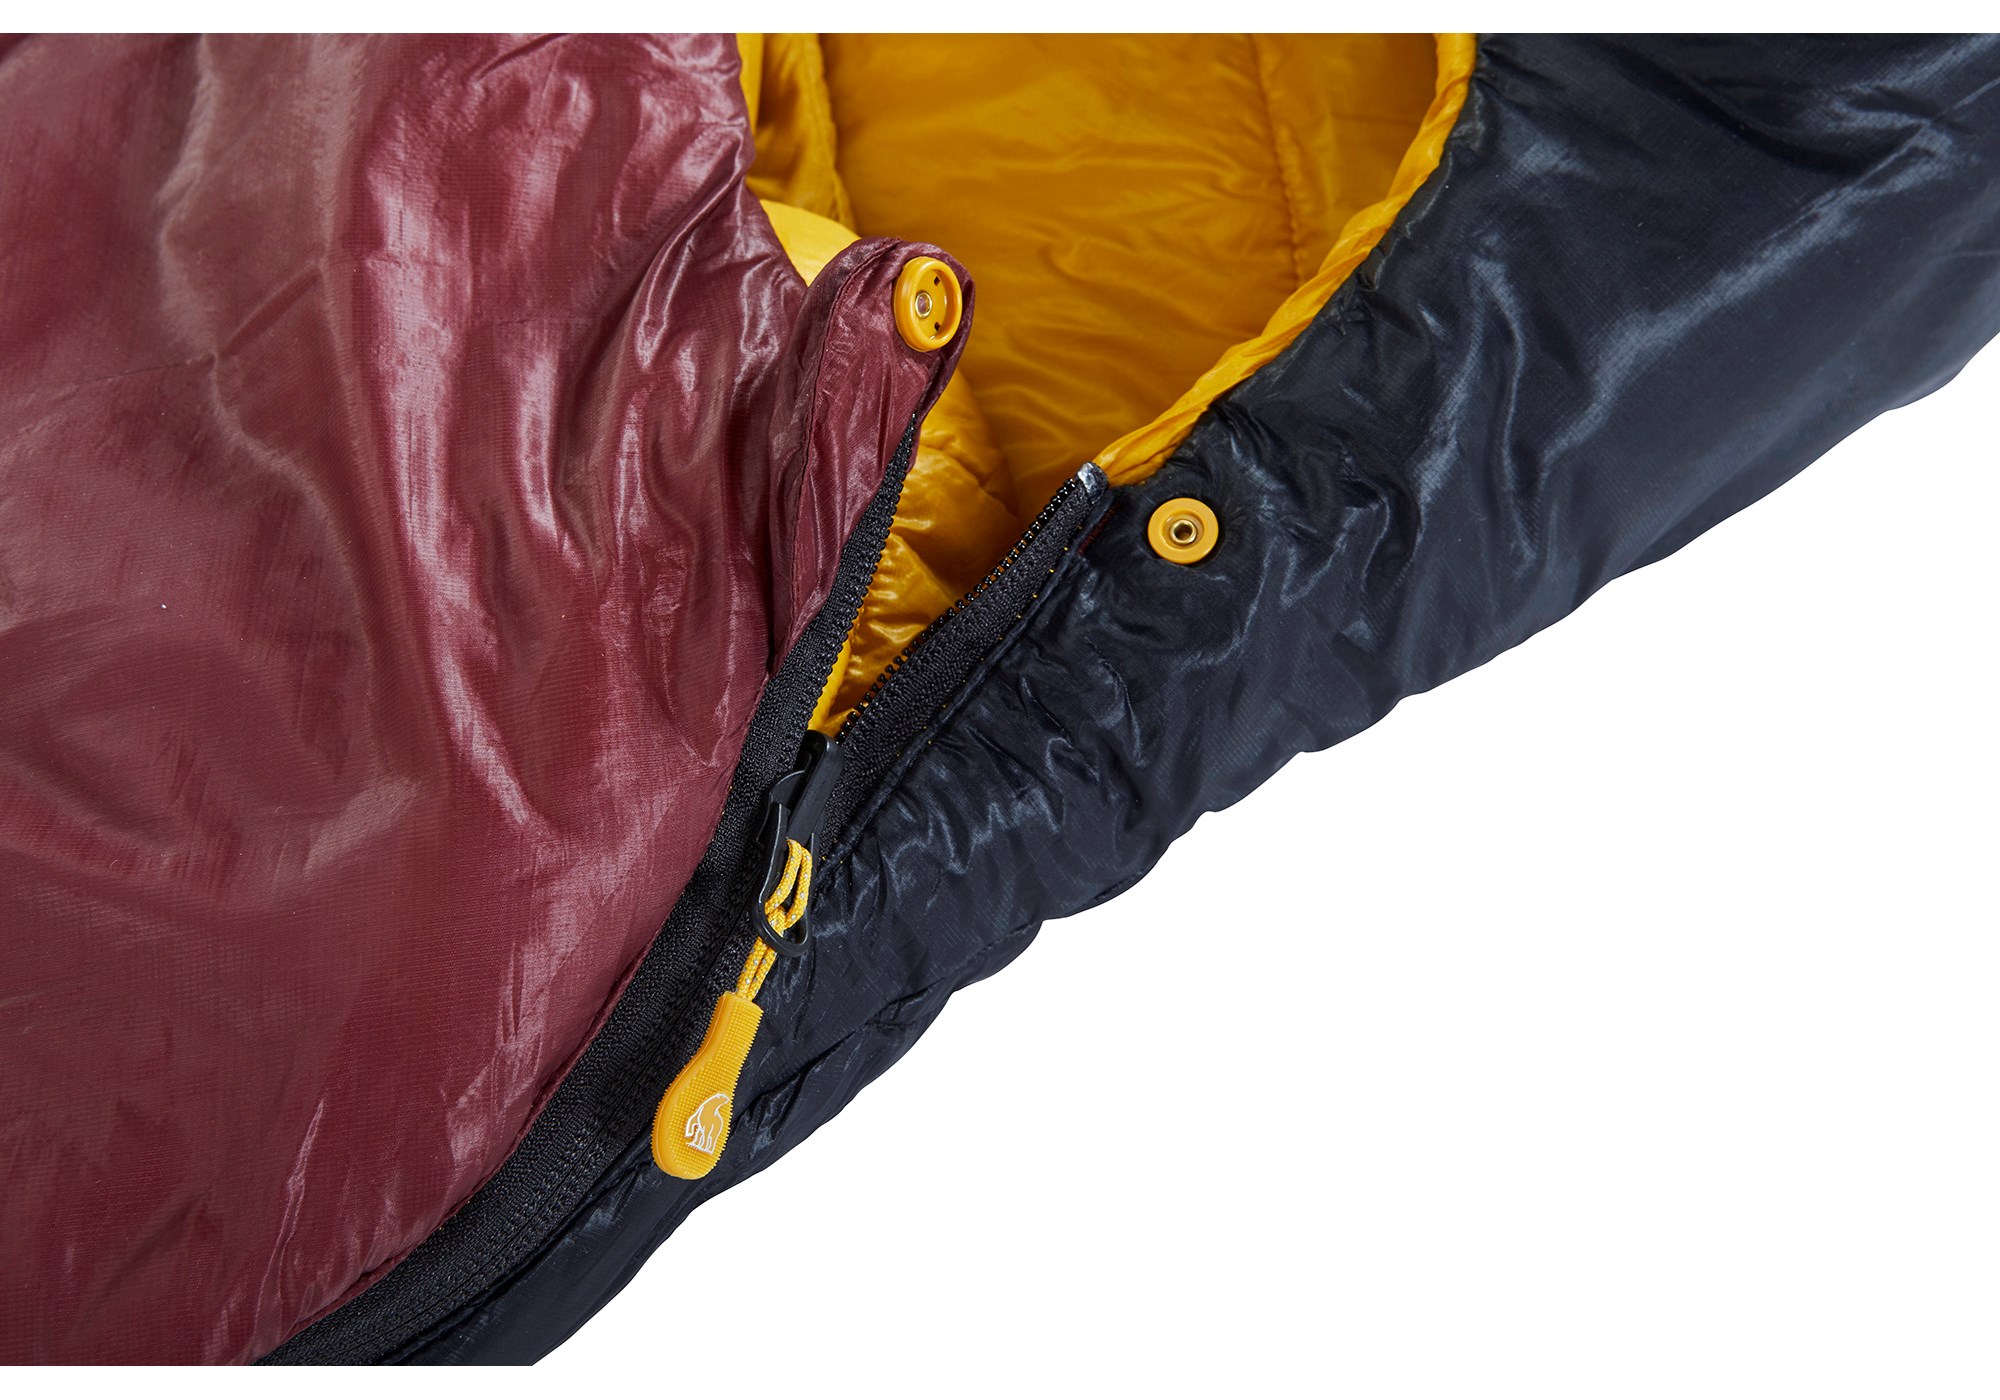 Nordisk Oscar -2° Curve sleeping bag Large